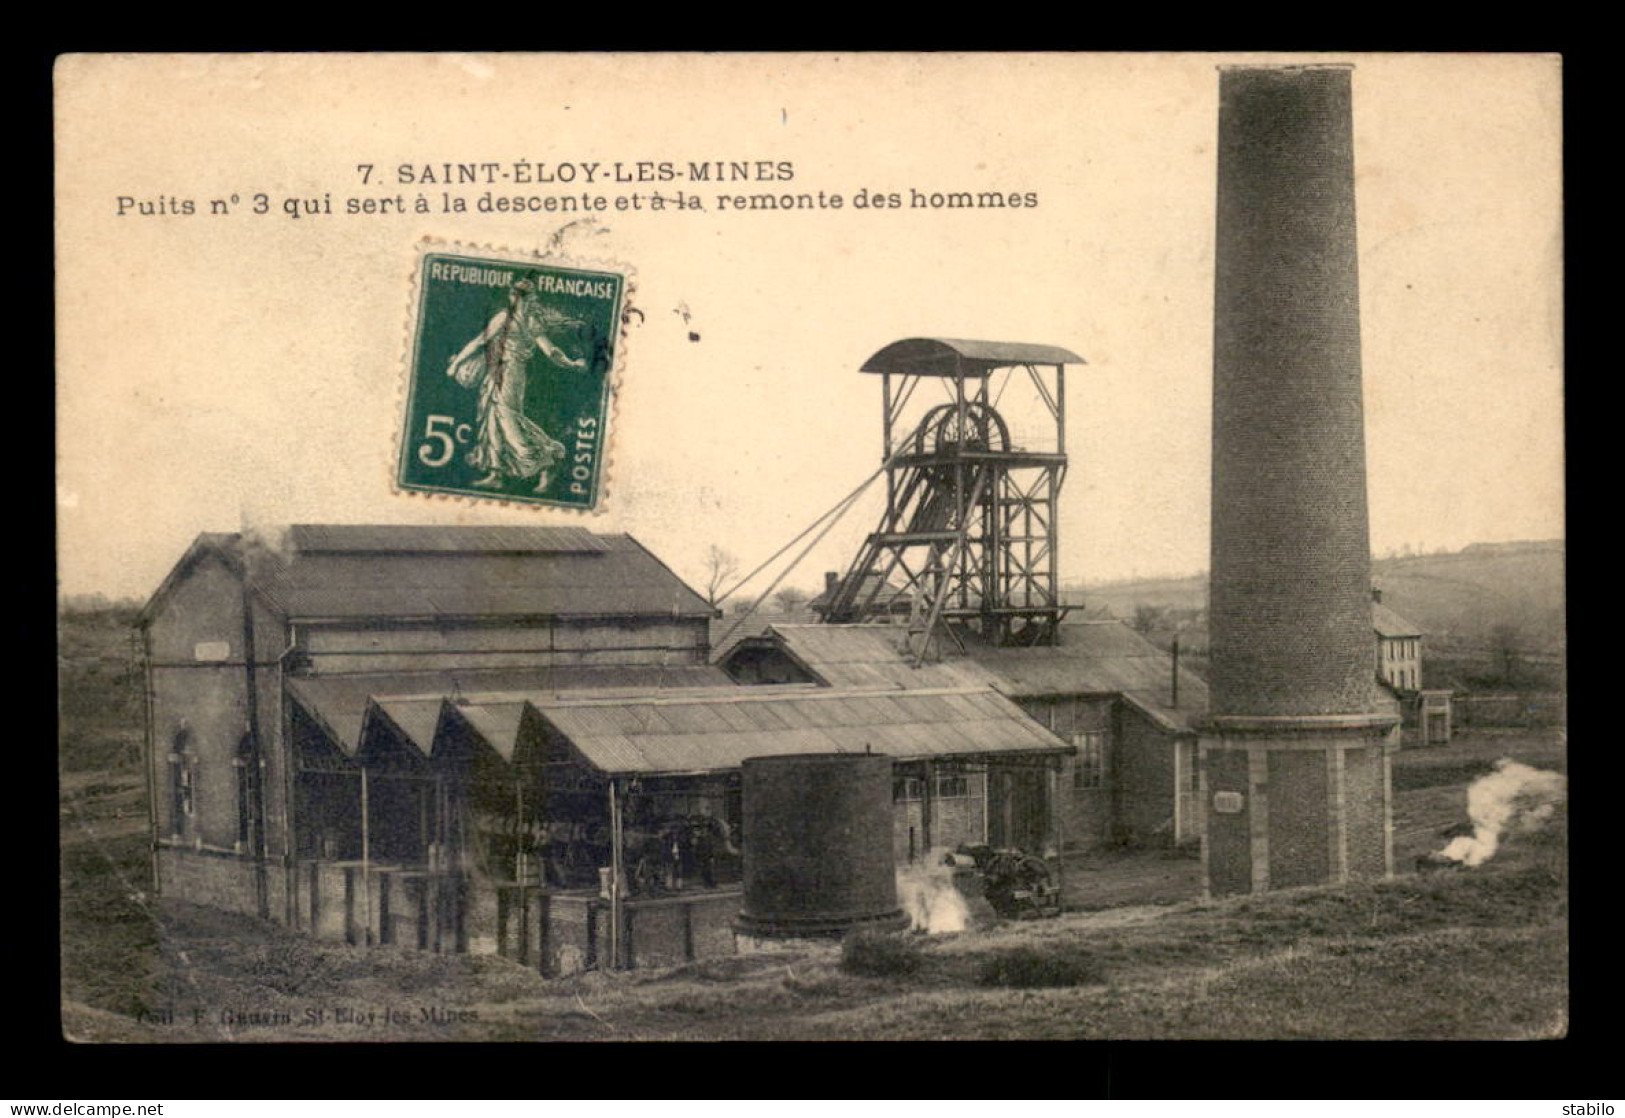 63 - ST-ELOY-LES-MINES - PUITS N°3 QUI SERT AU TRANSPORT DES HOMMES - MINE - Saint Eloy Les Mines